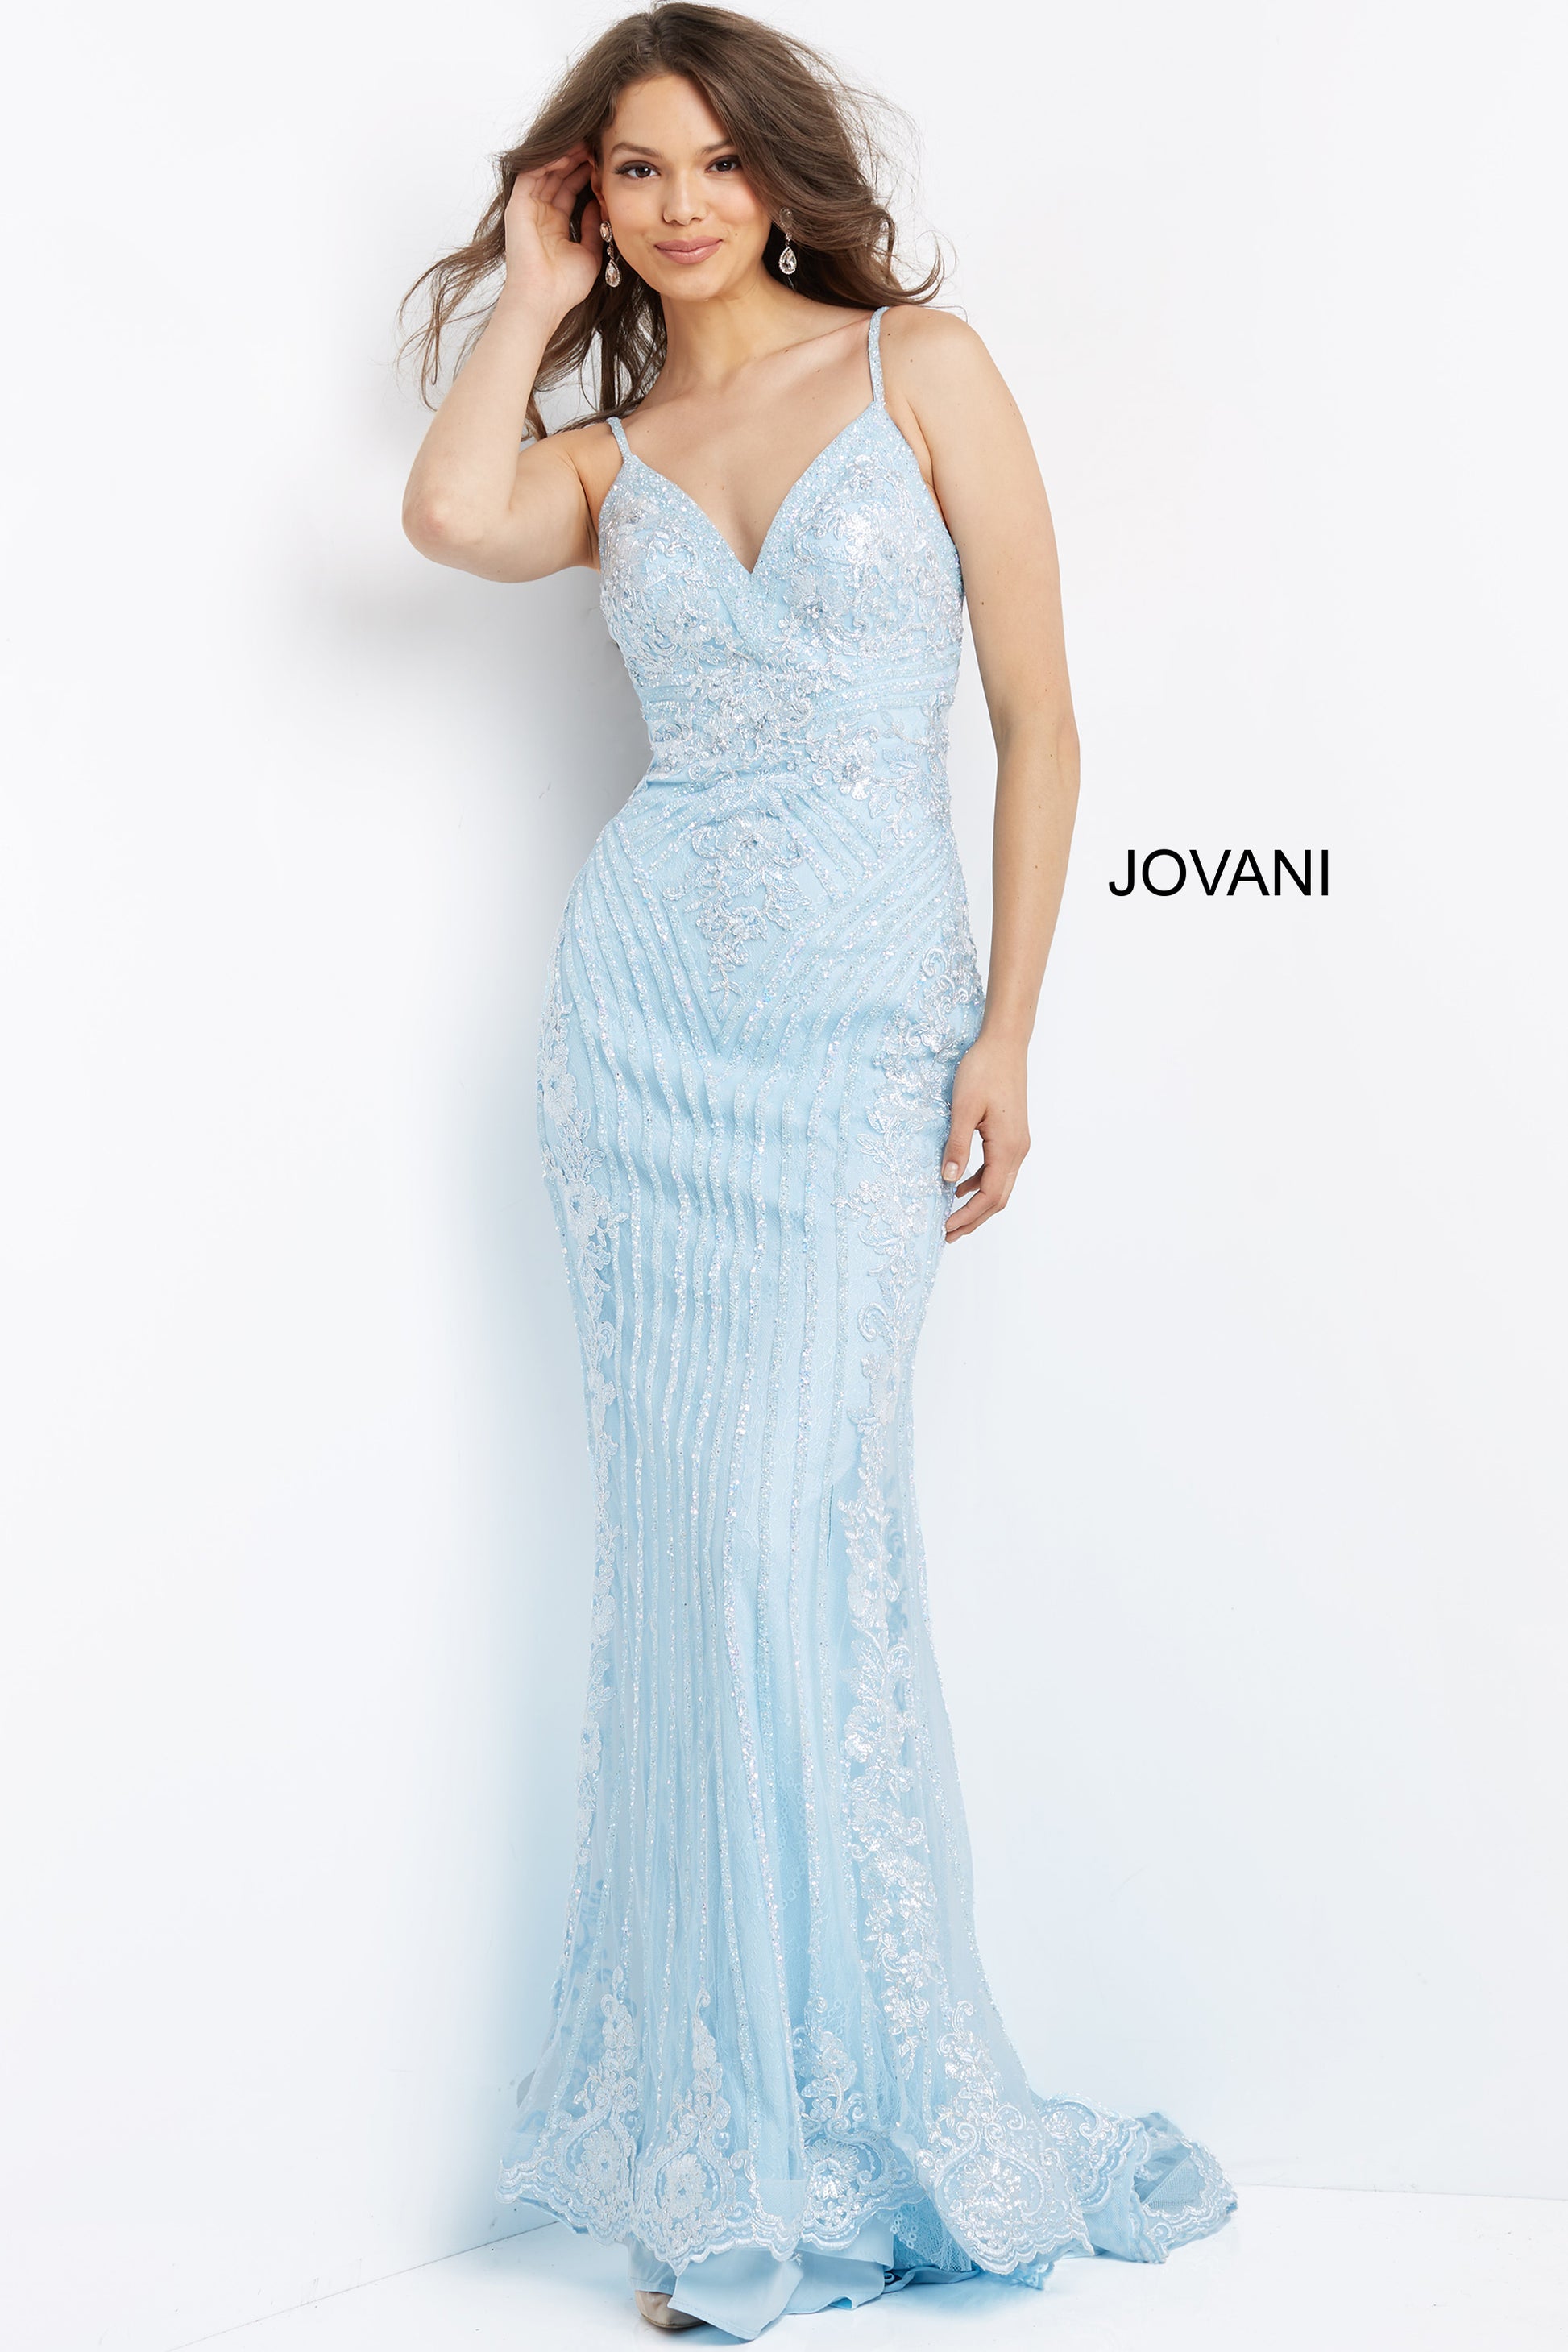 Jovani-05752-light-blue-prom-dress-front-embellished-lace-column-dress-v-neckline